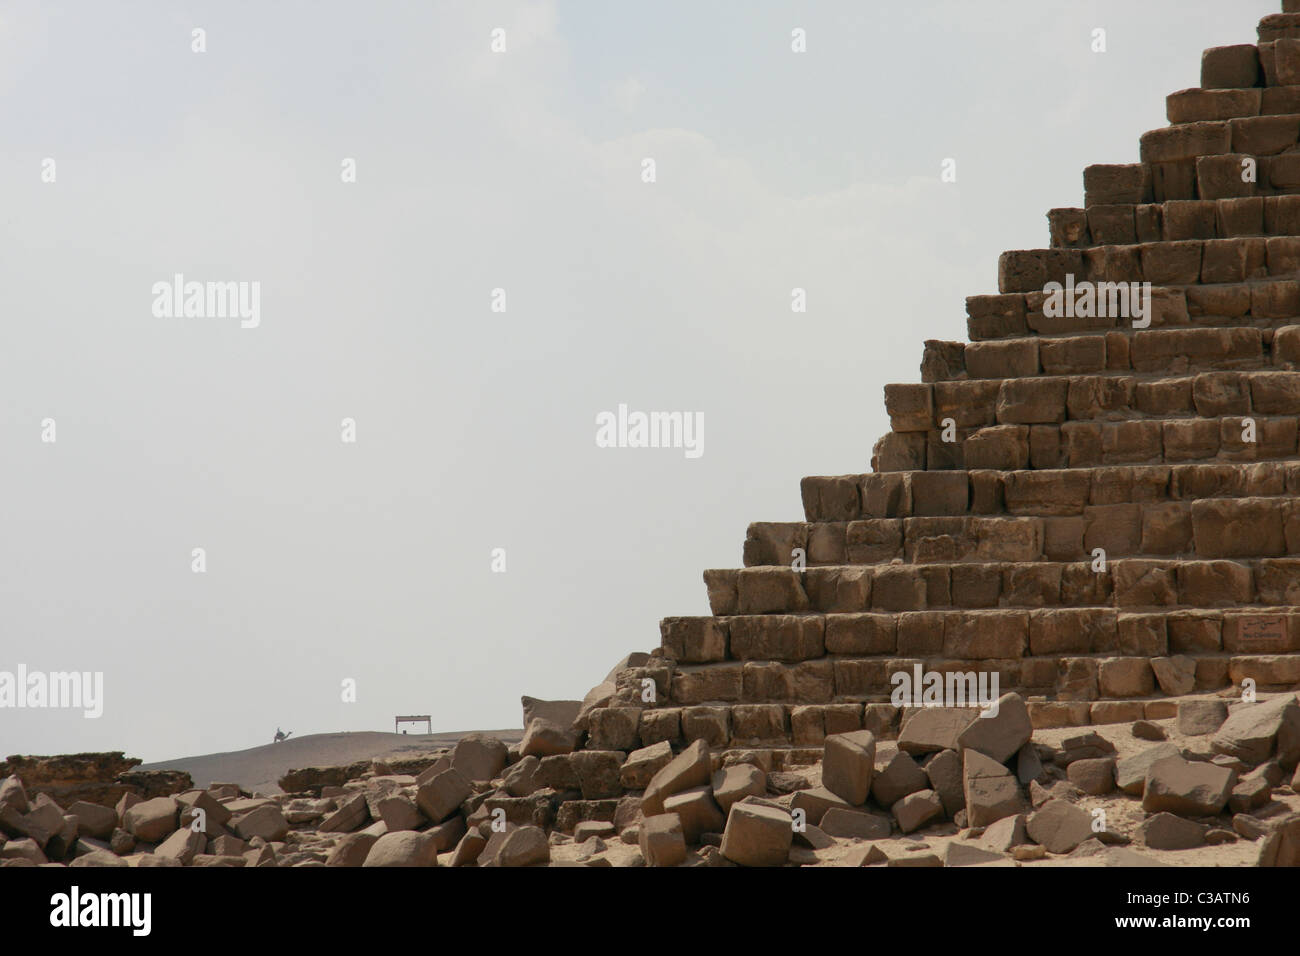 Ripperblackstaff Menkaourê la pyramide de Gizeh, Le Caire, Égypte. Banque D'Images